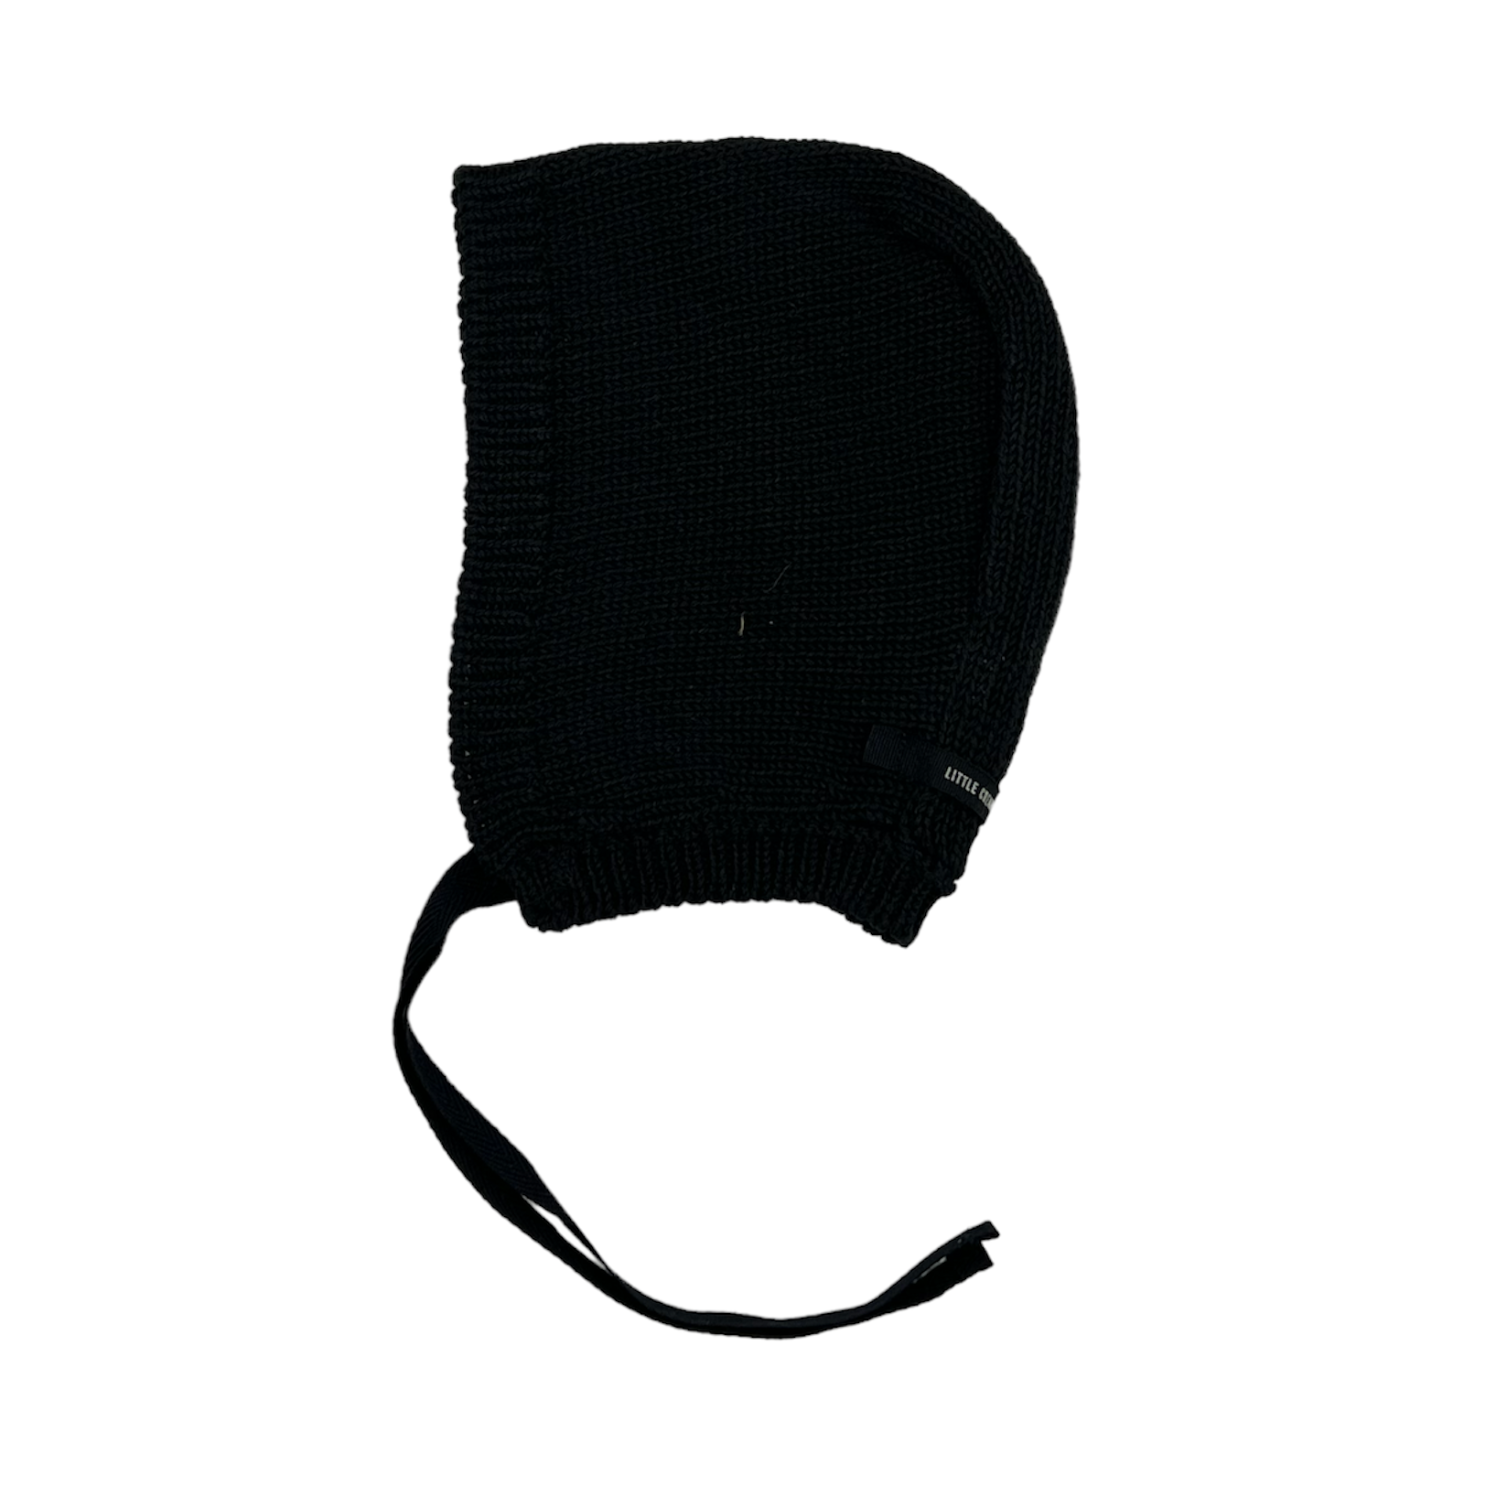 Little Creative Factory Hawaii Knit Bonnet - Black